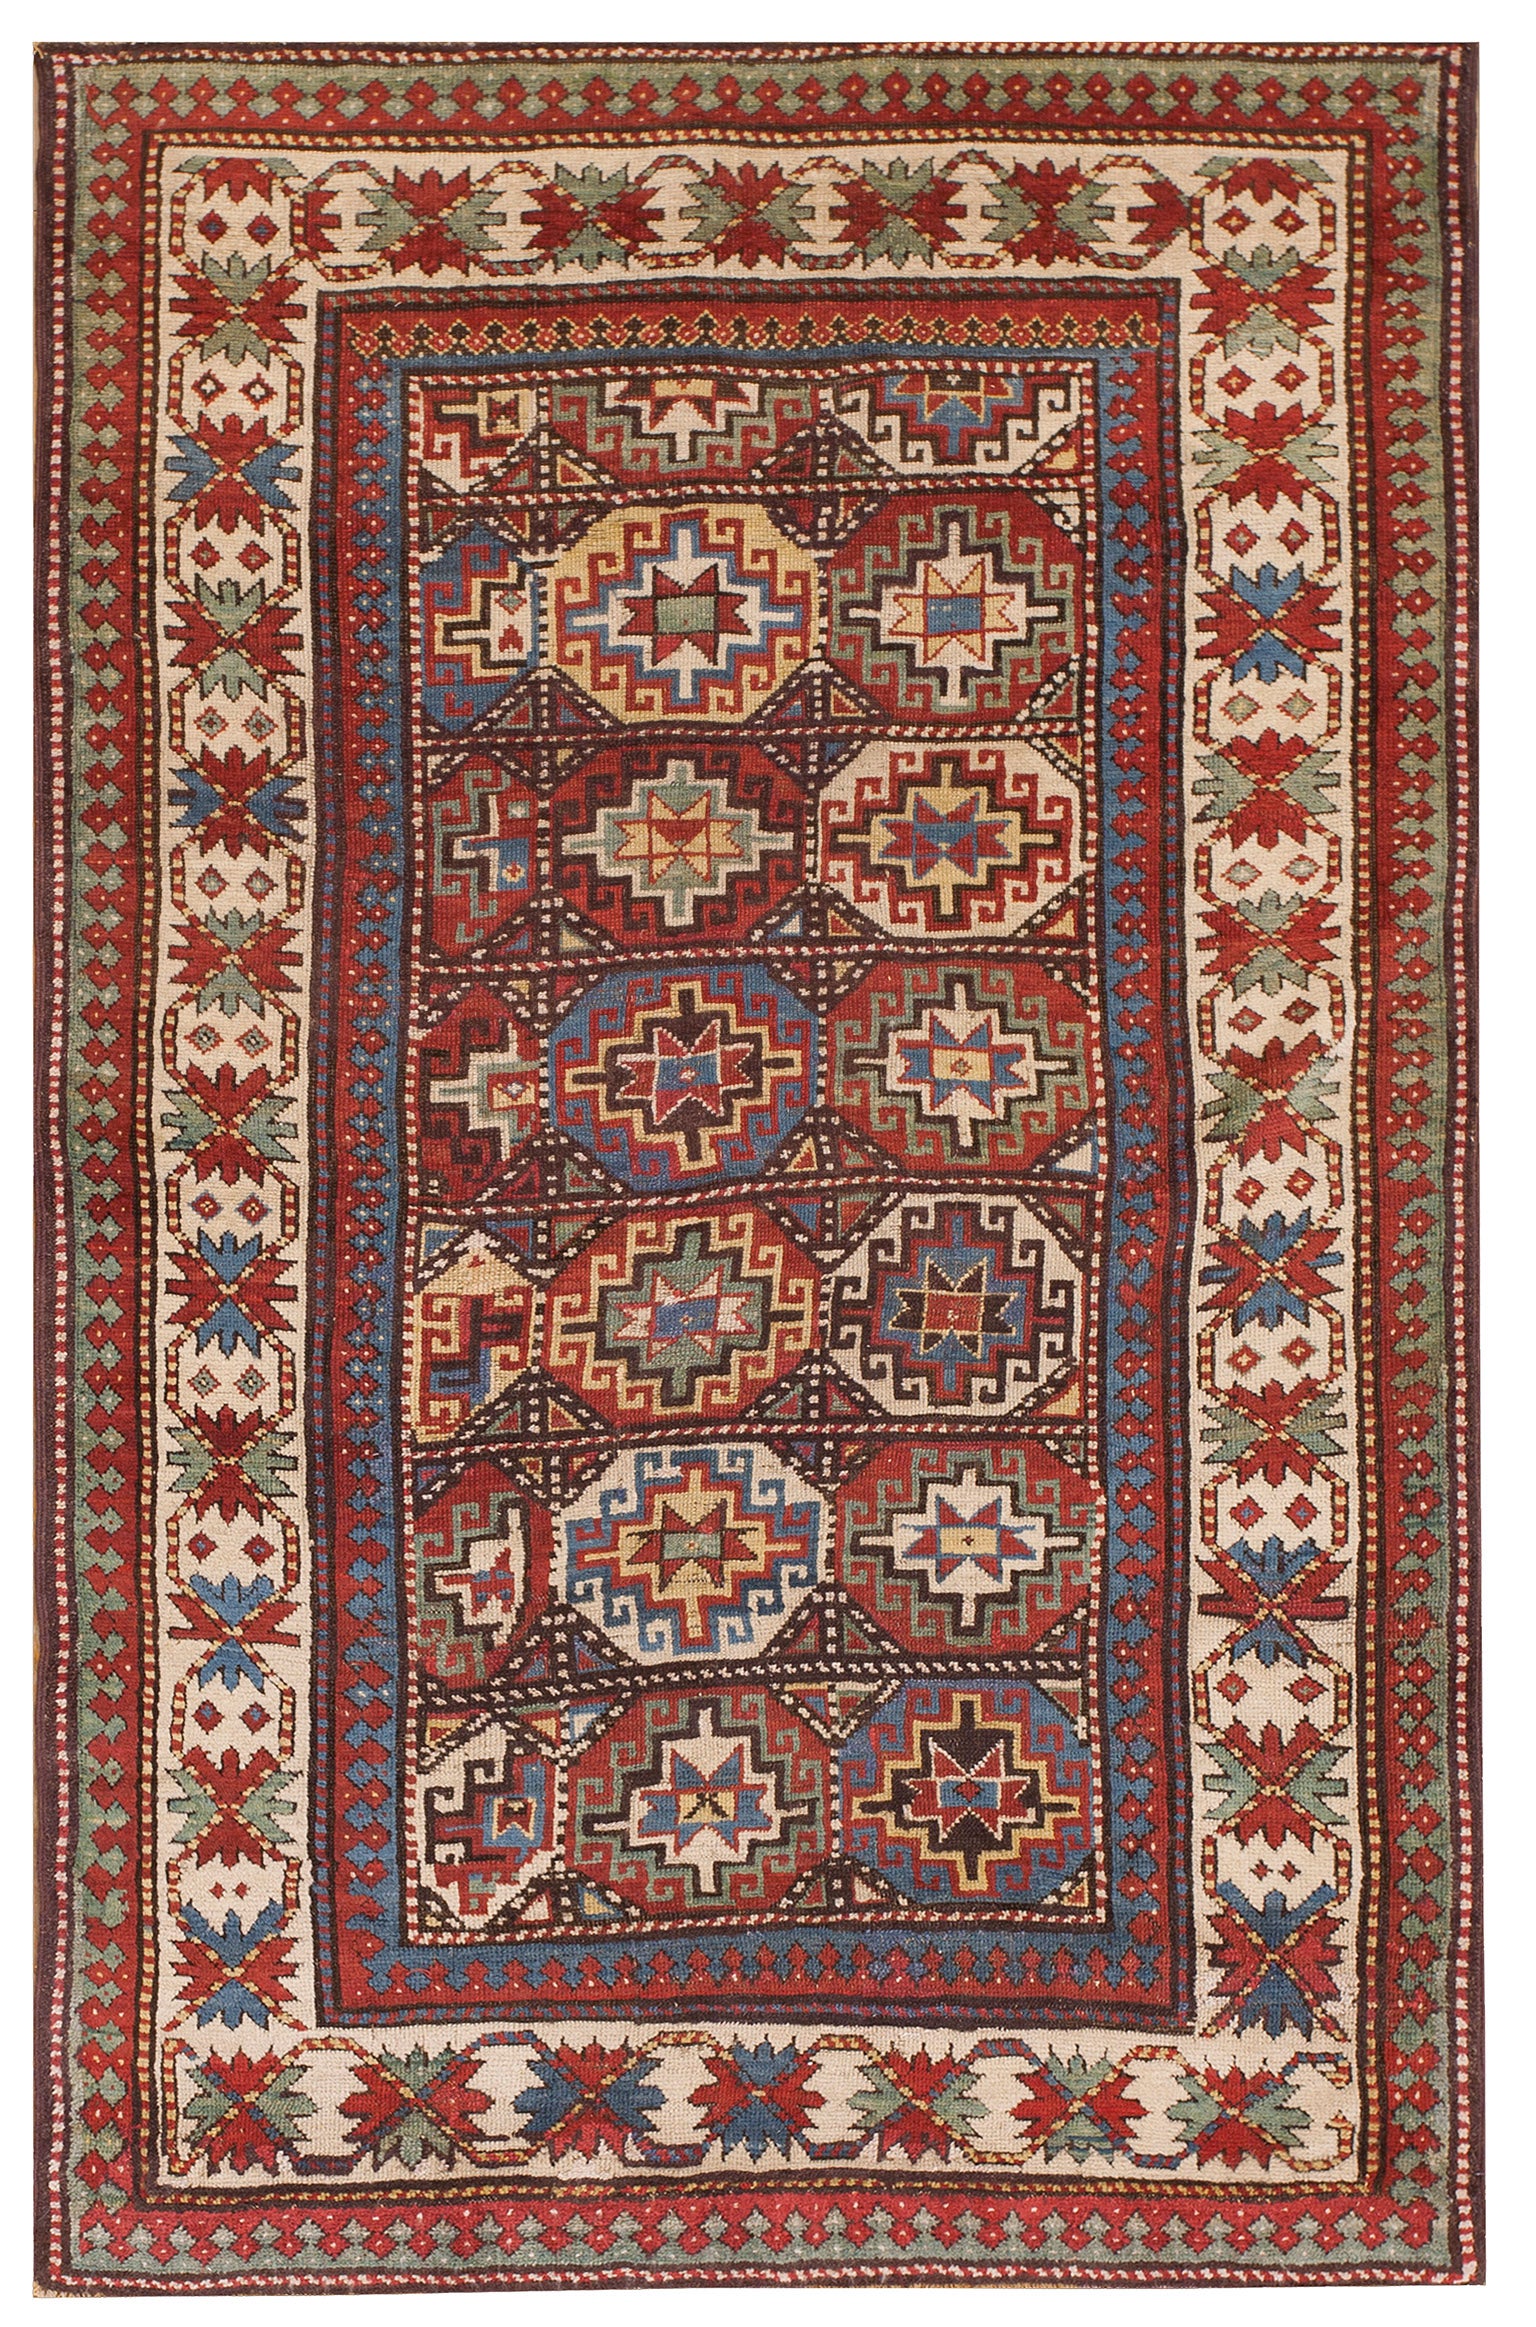 19th Century Caucasian Kazak Carpet ( 4'2" x 6'8" - 127 x 203 )